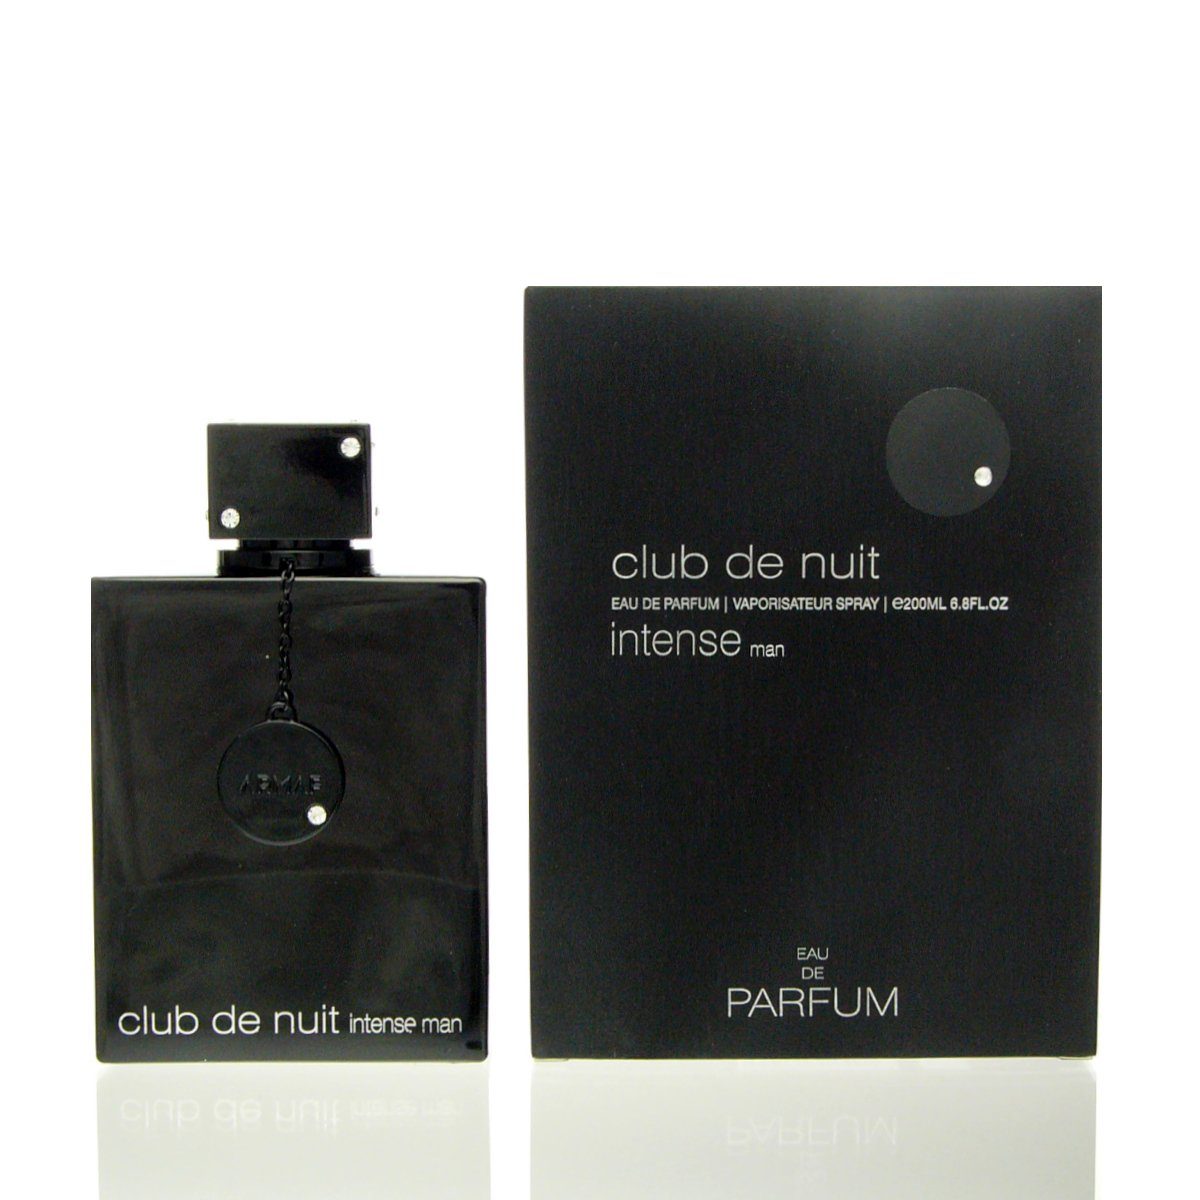 ml de de Man armaf Club Parfum Armaf Eau Intense Nuit Parfum de 200 Eau